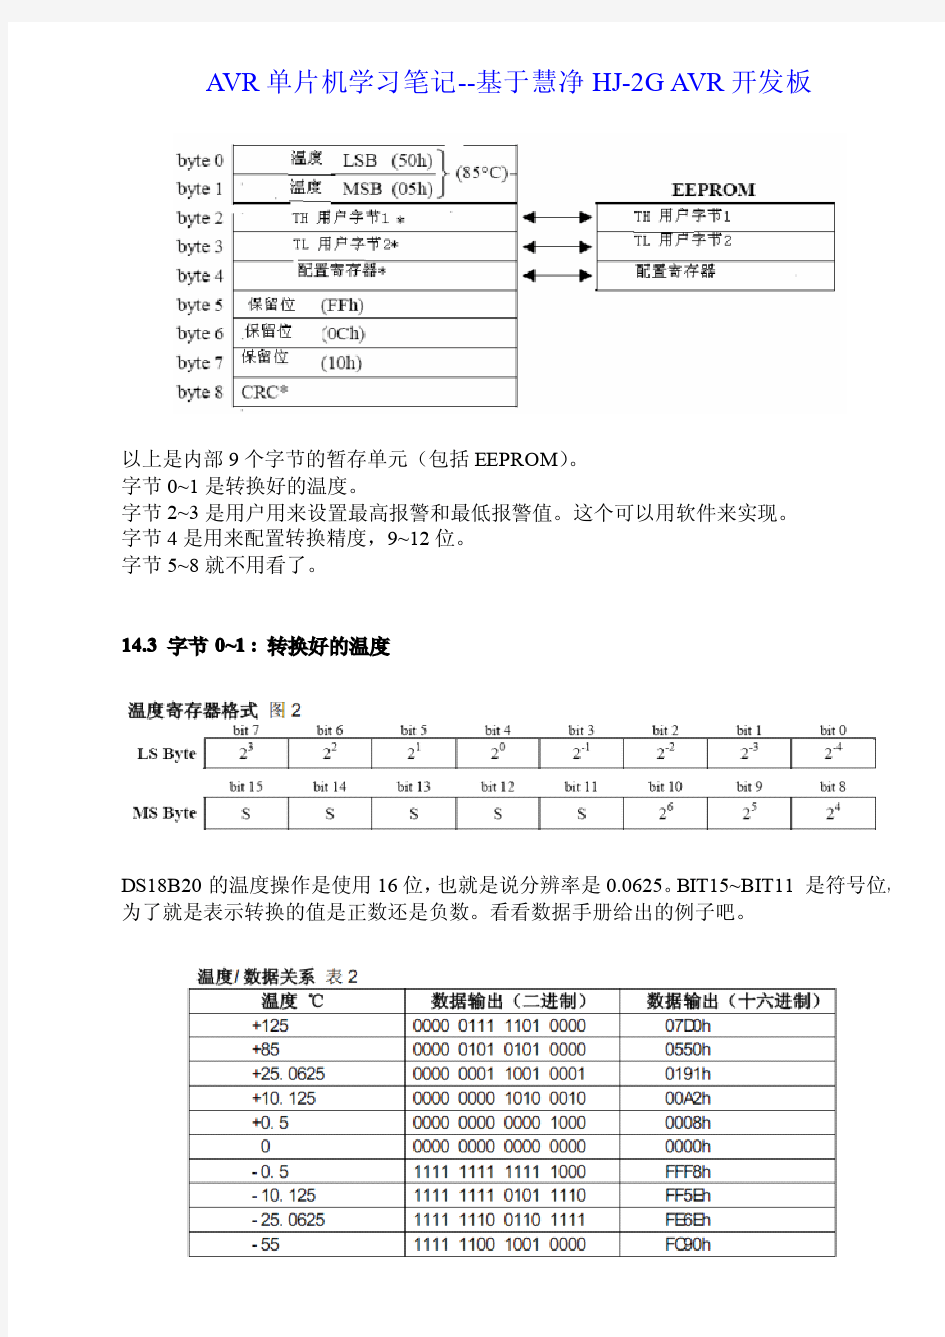 DS18B20温度传感器中文资料